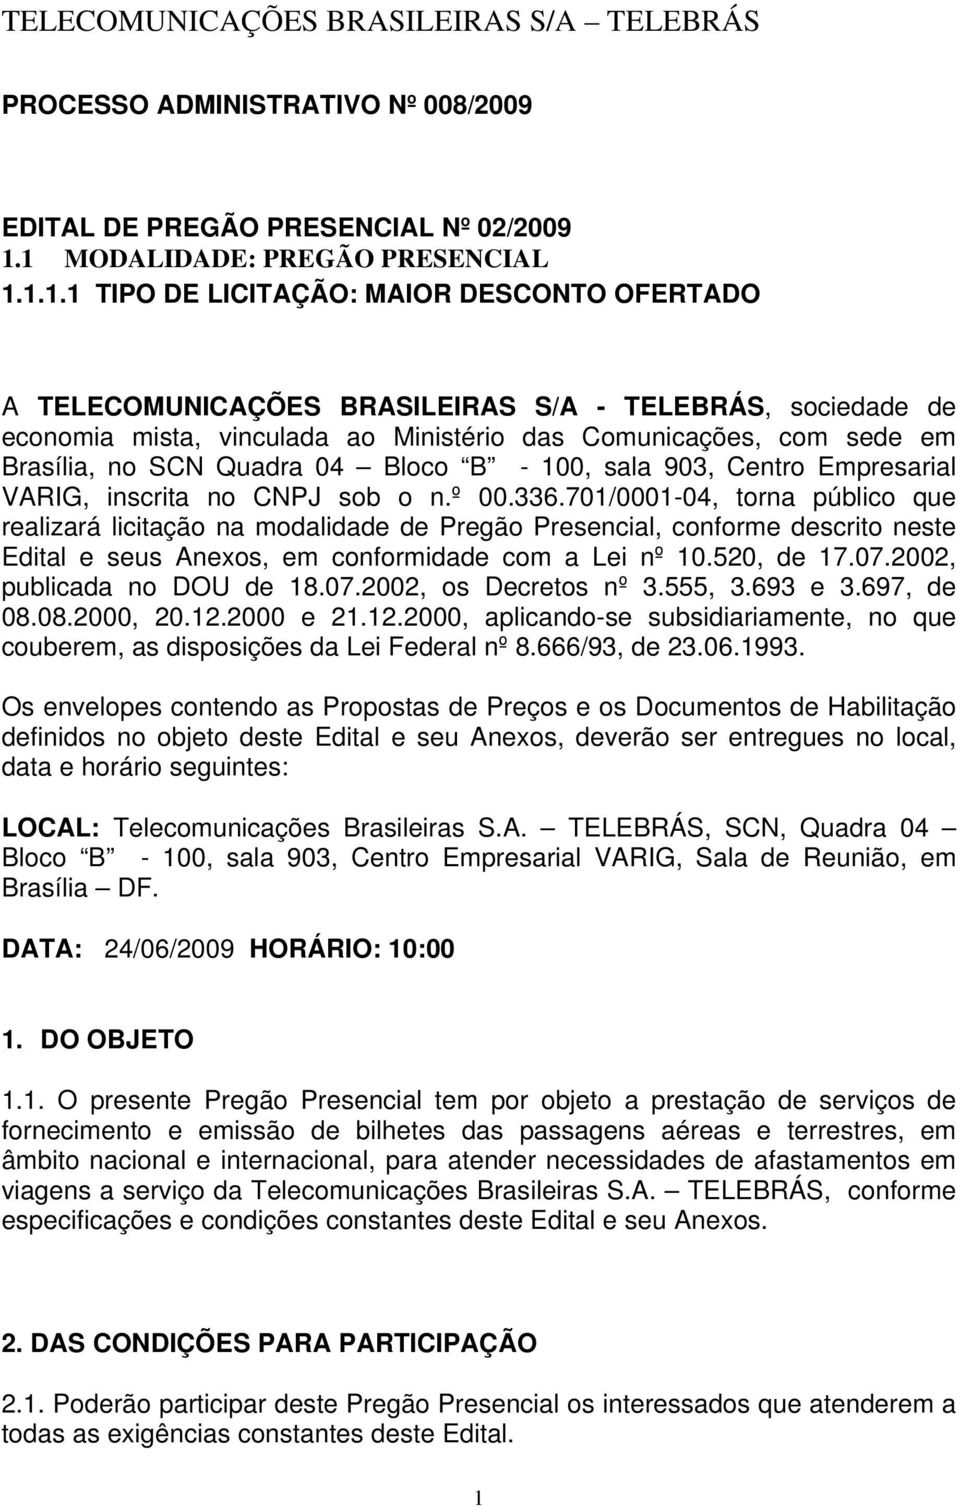 Comunicações, com sede em Brasília, no SCN Quadra 04 Bloco B - 100, sala 903, Centro Empresarial VARIG, inscrita no CNPJ sob o n.º 00.336.